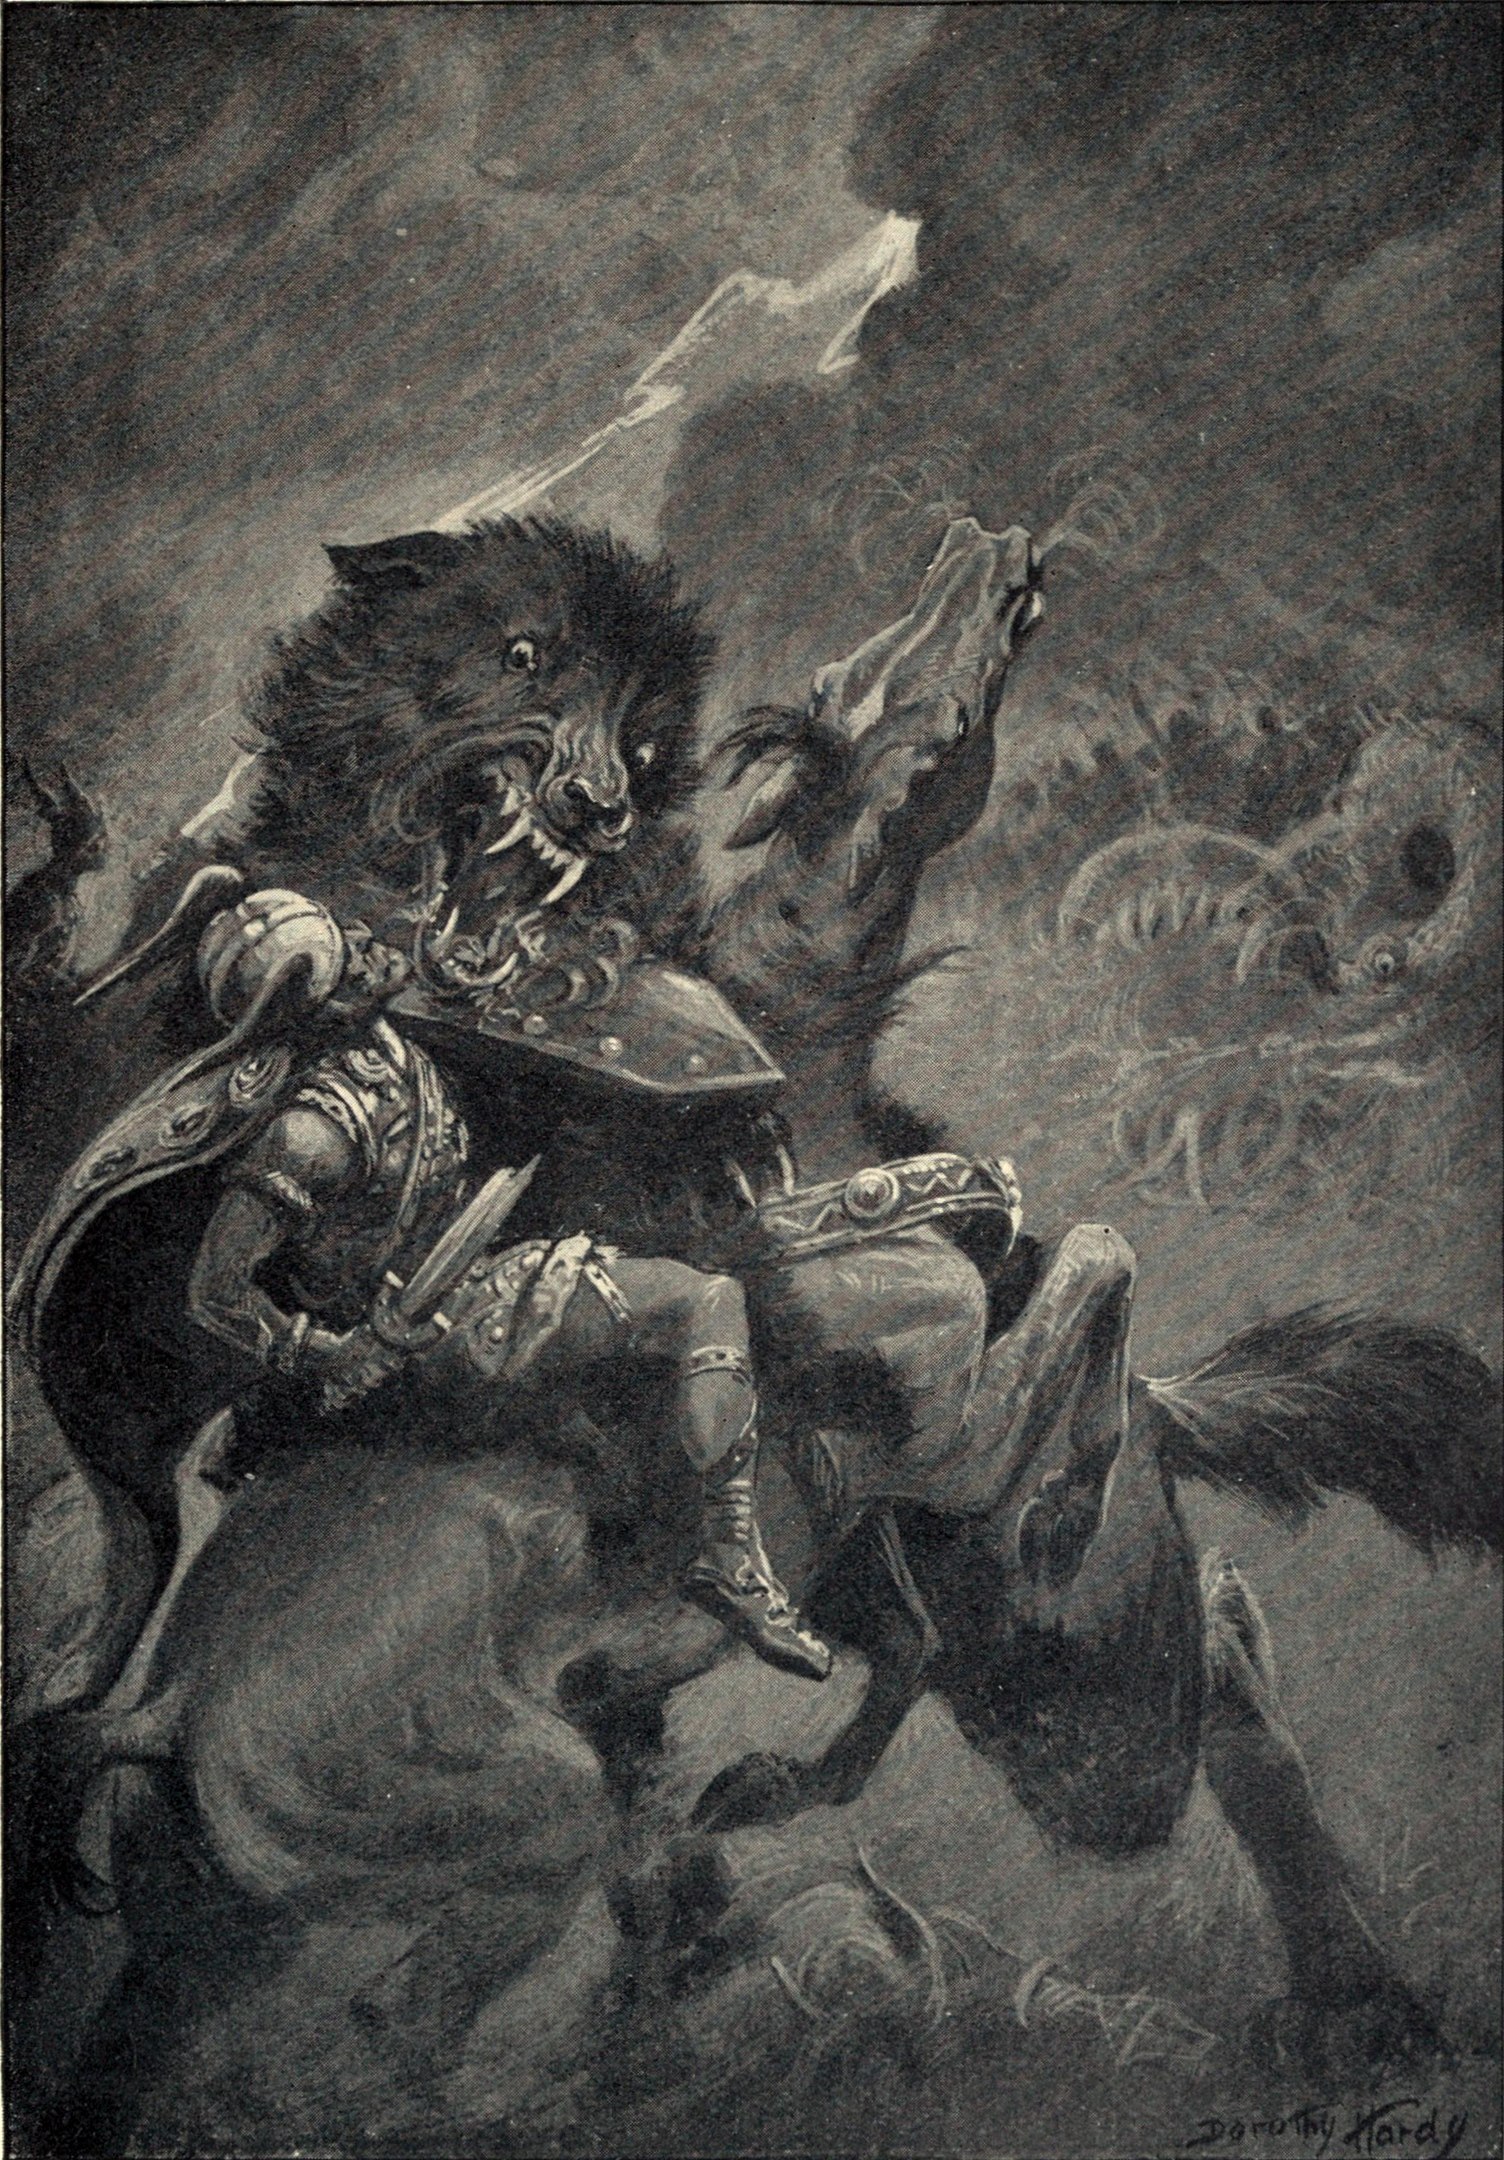 A god on a horse battling a ferocious beast